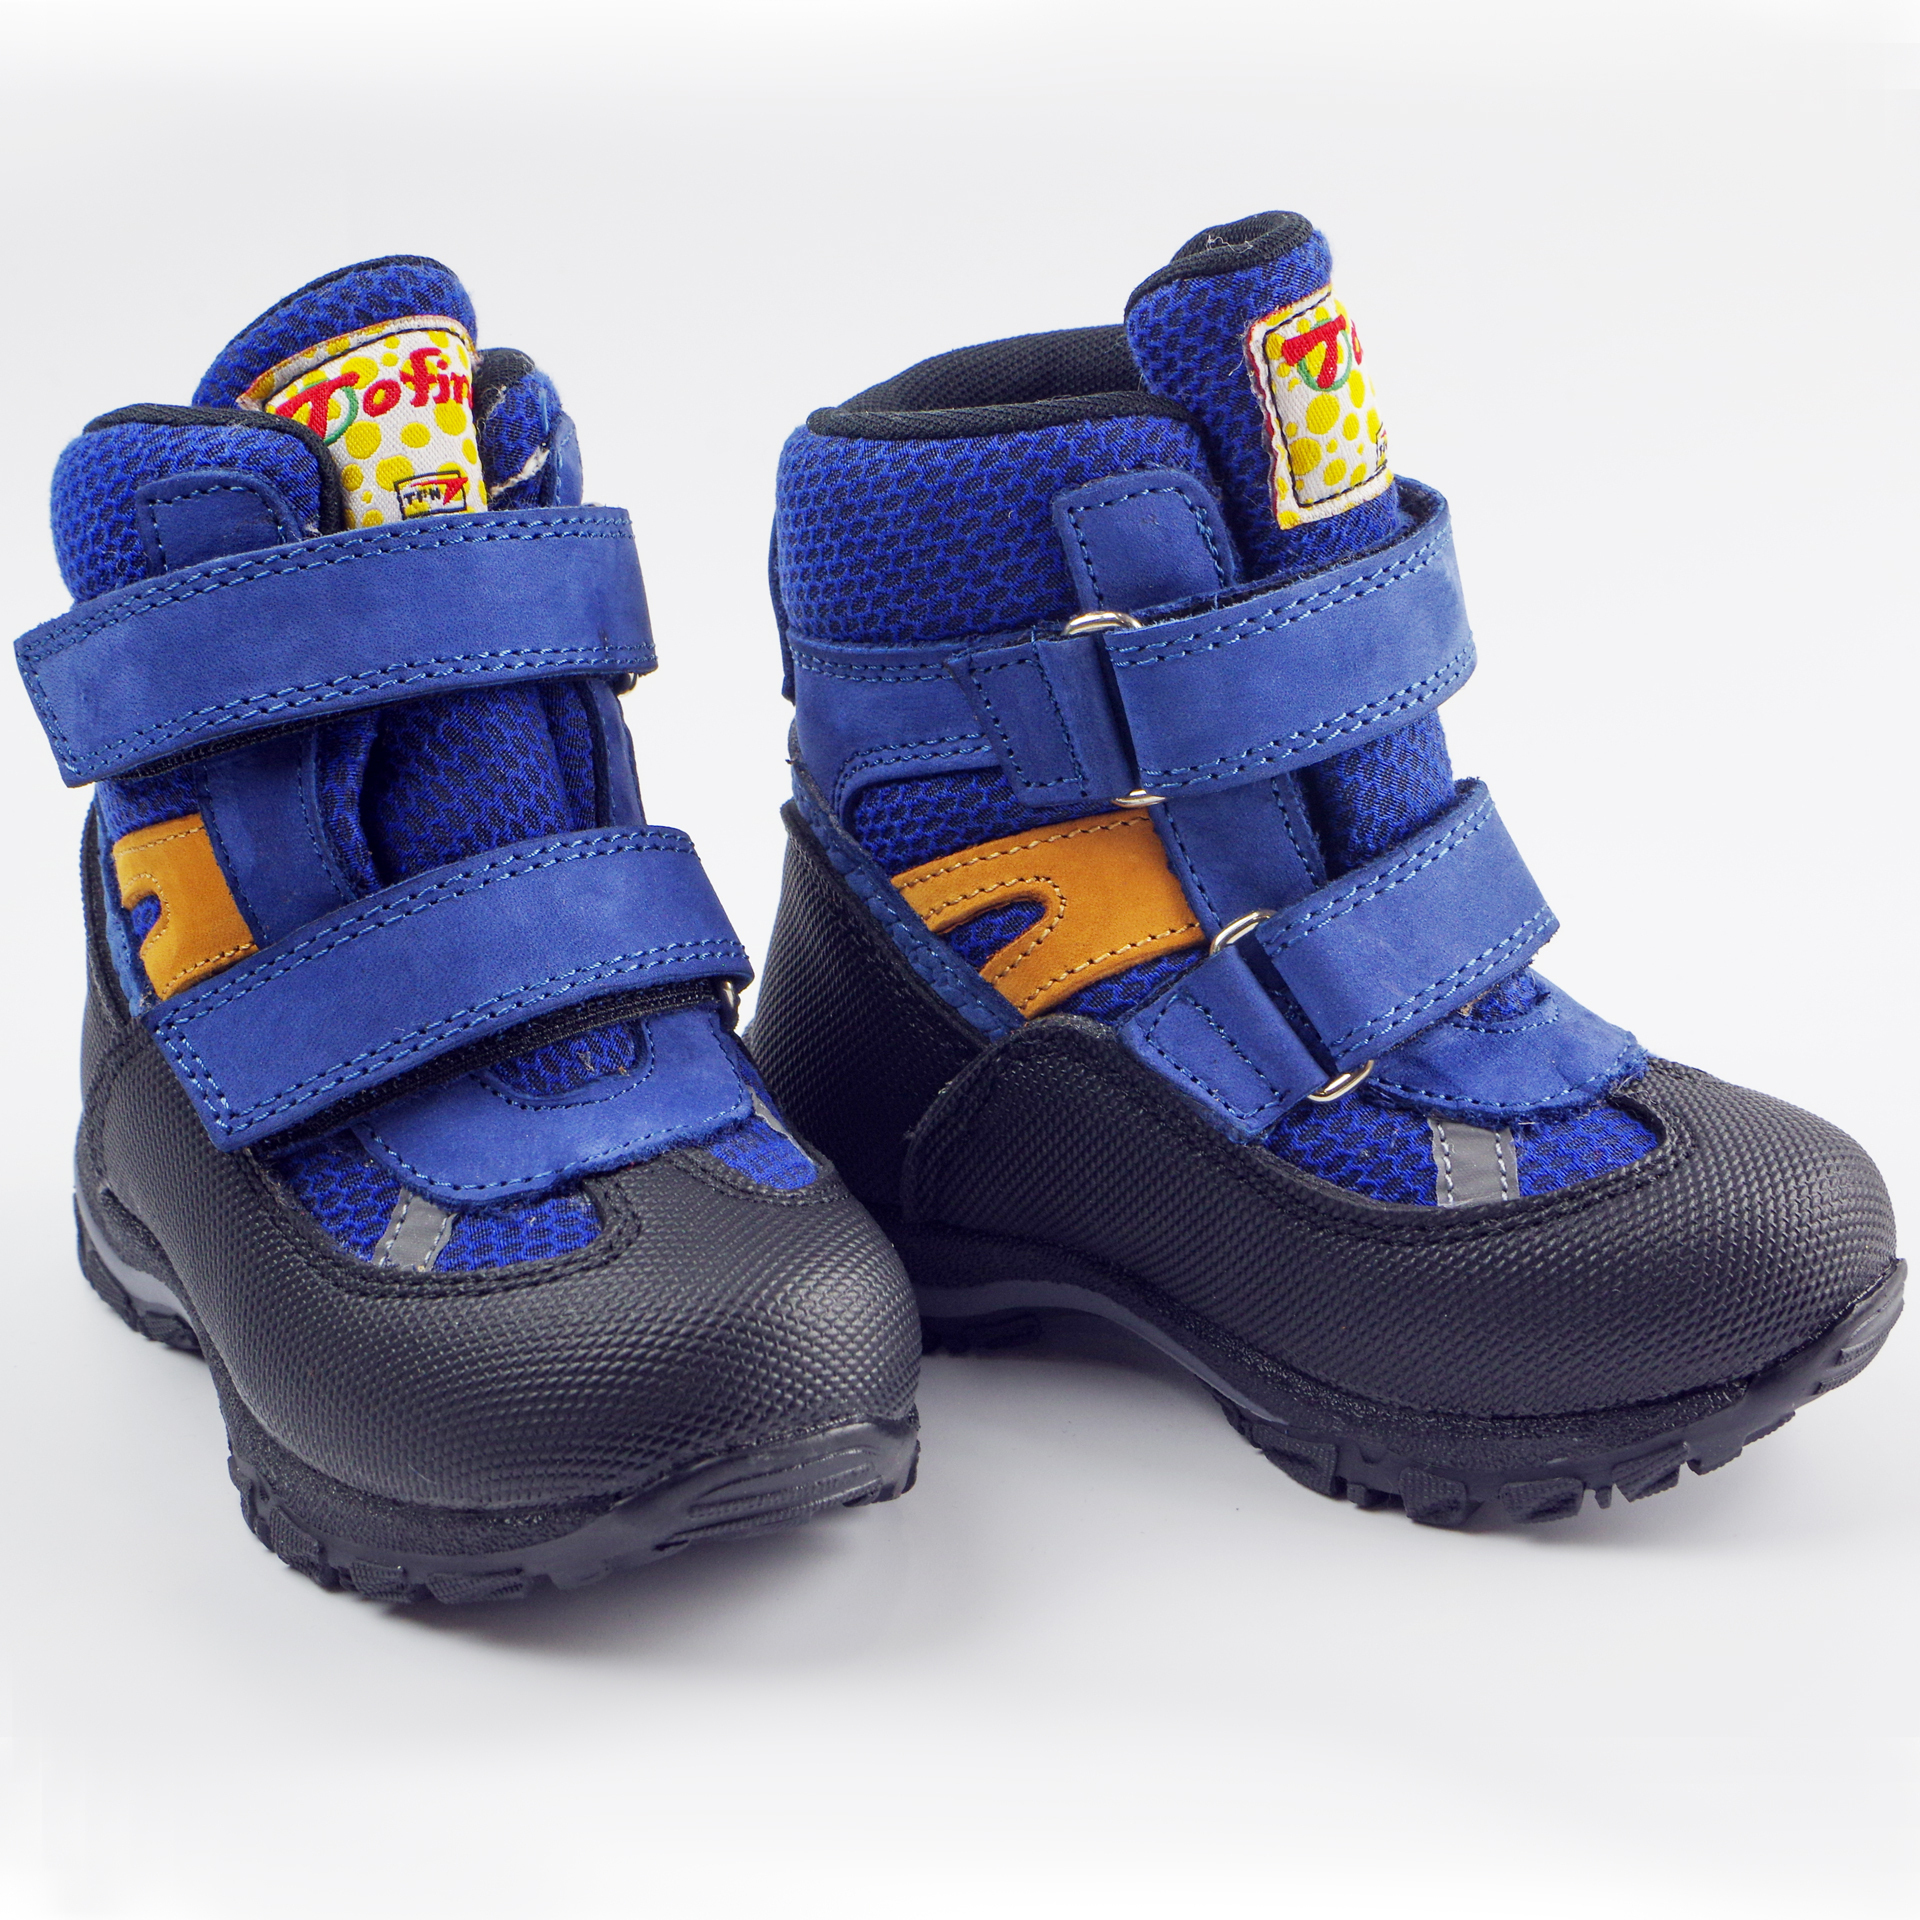 Зимние мембранные ботинки (2146) материал Мембрана, цвет Синий  для мальчиков 22-25 размеры – Sole Kids. Фото 2